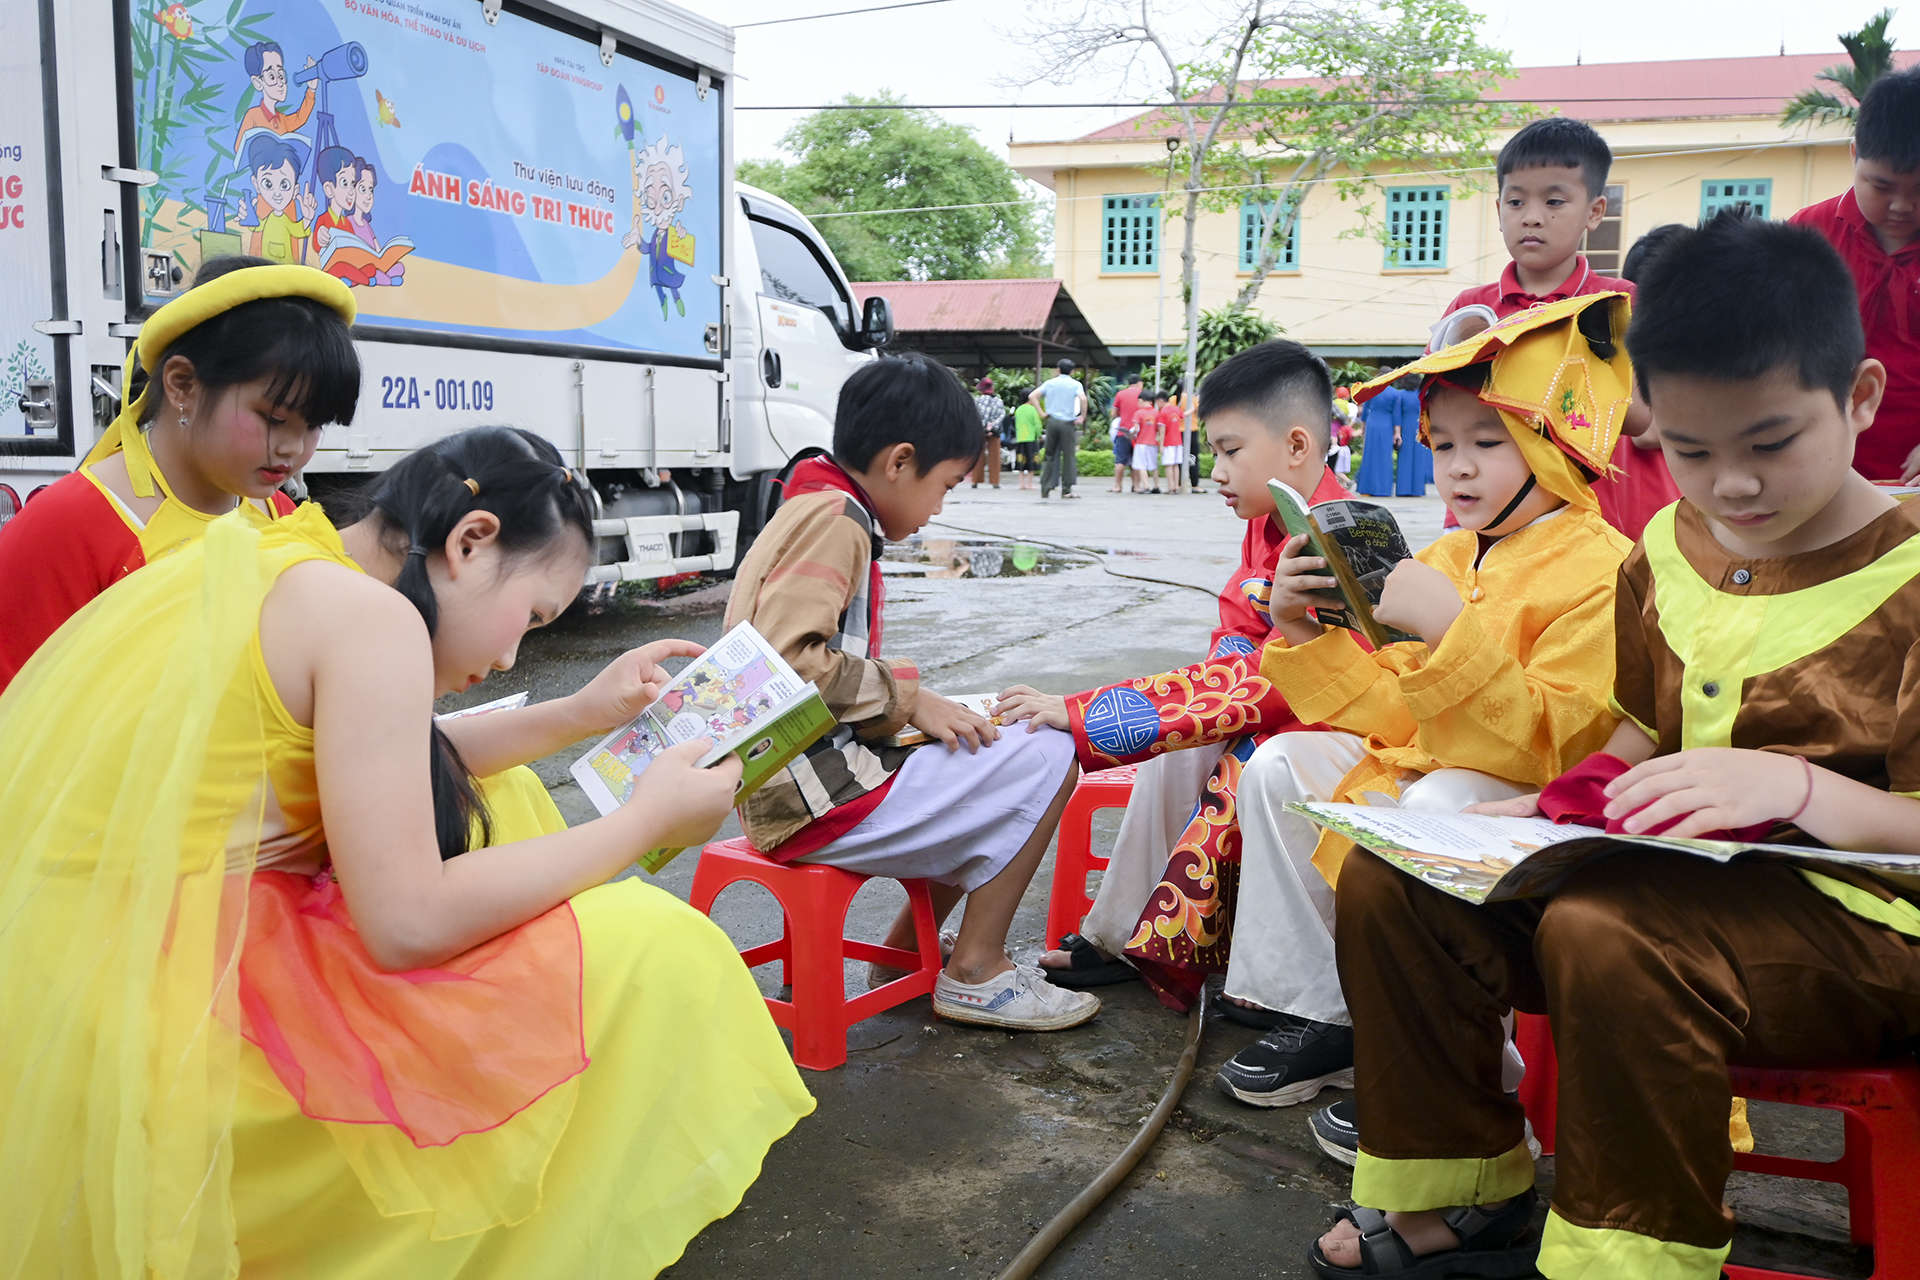  Ngày sách và văn hóa đọc Việt Nam tại trường Tiểu học Phúc Thịnh